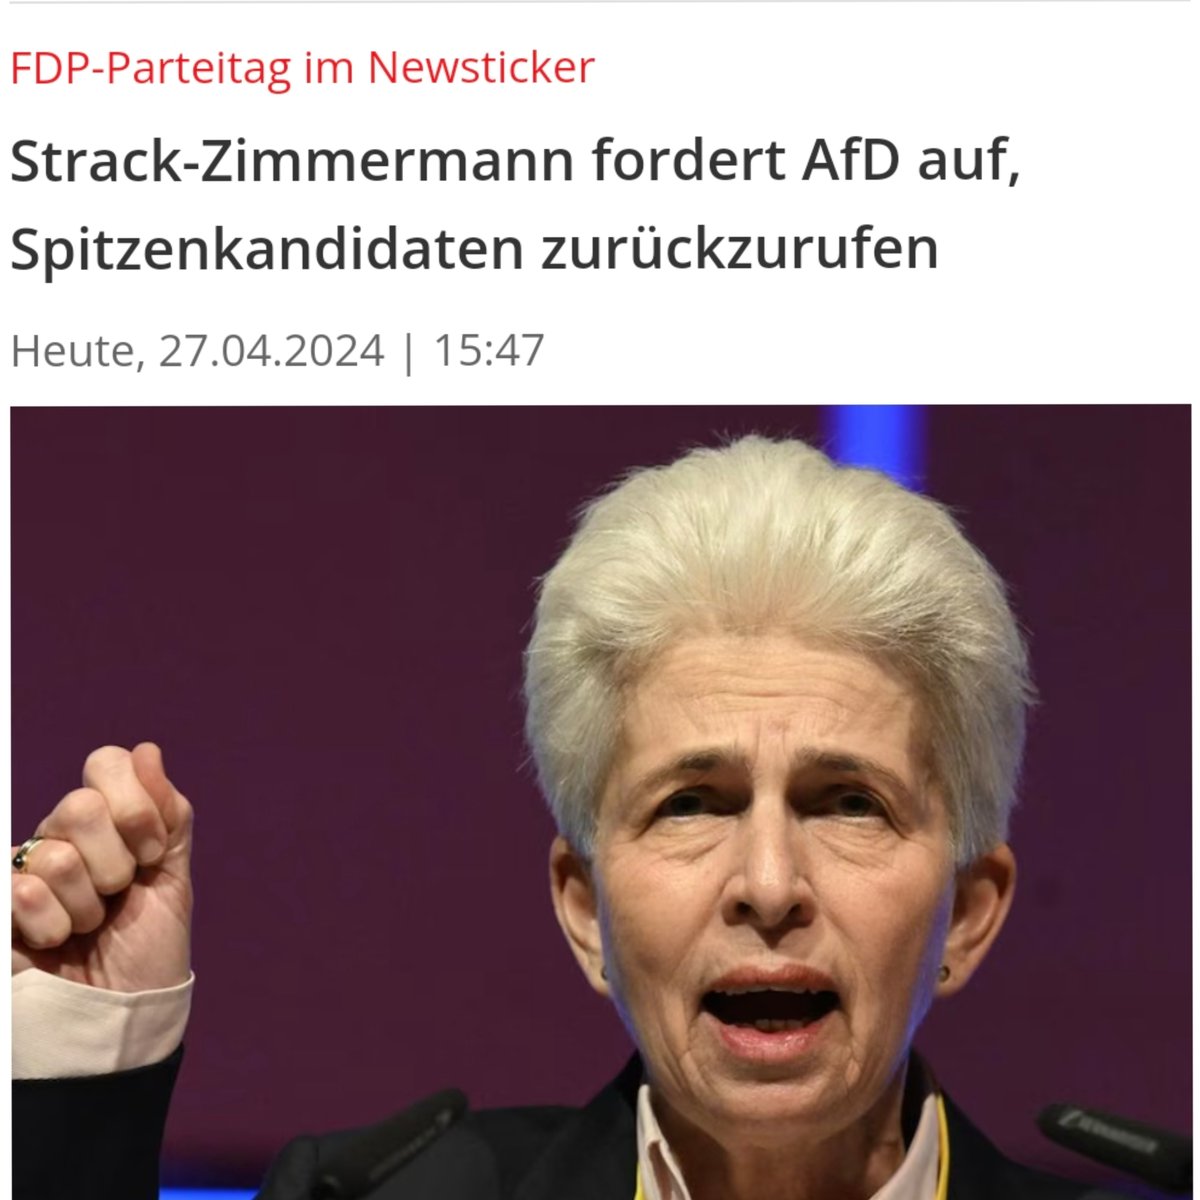 Flak-Zimmermann von der um die 5% Hürde kämpfenden Kleinstpartei #FDP fordert ....🤡 #AfD #Krah